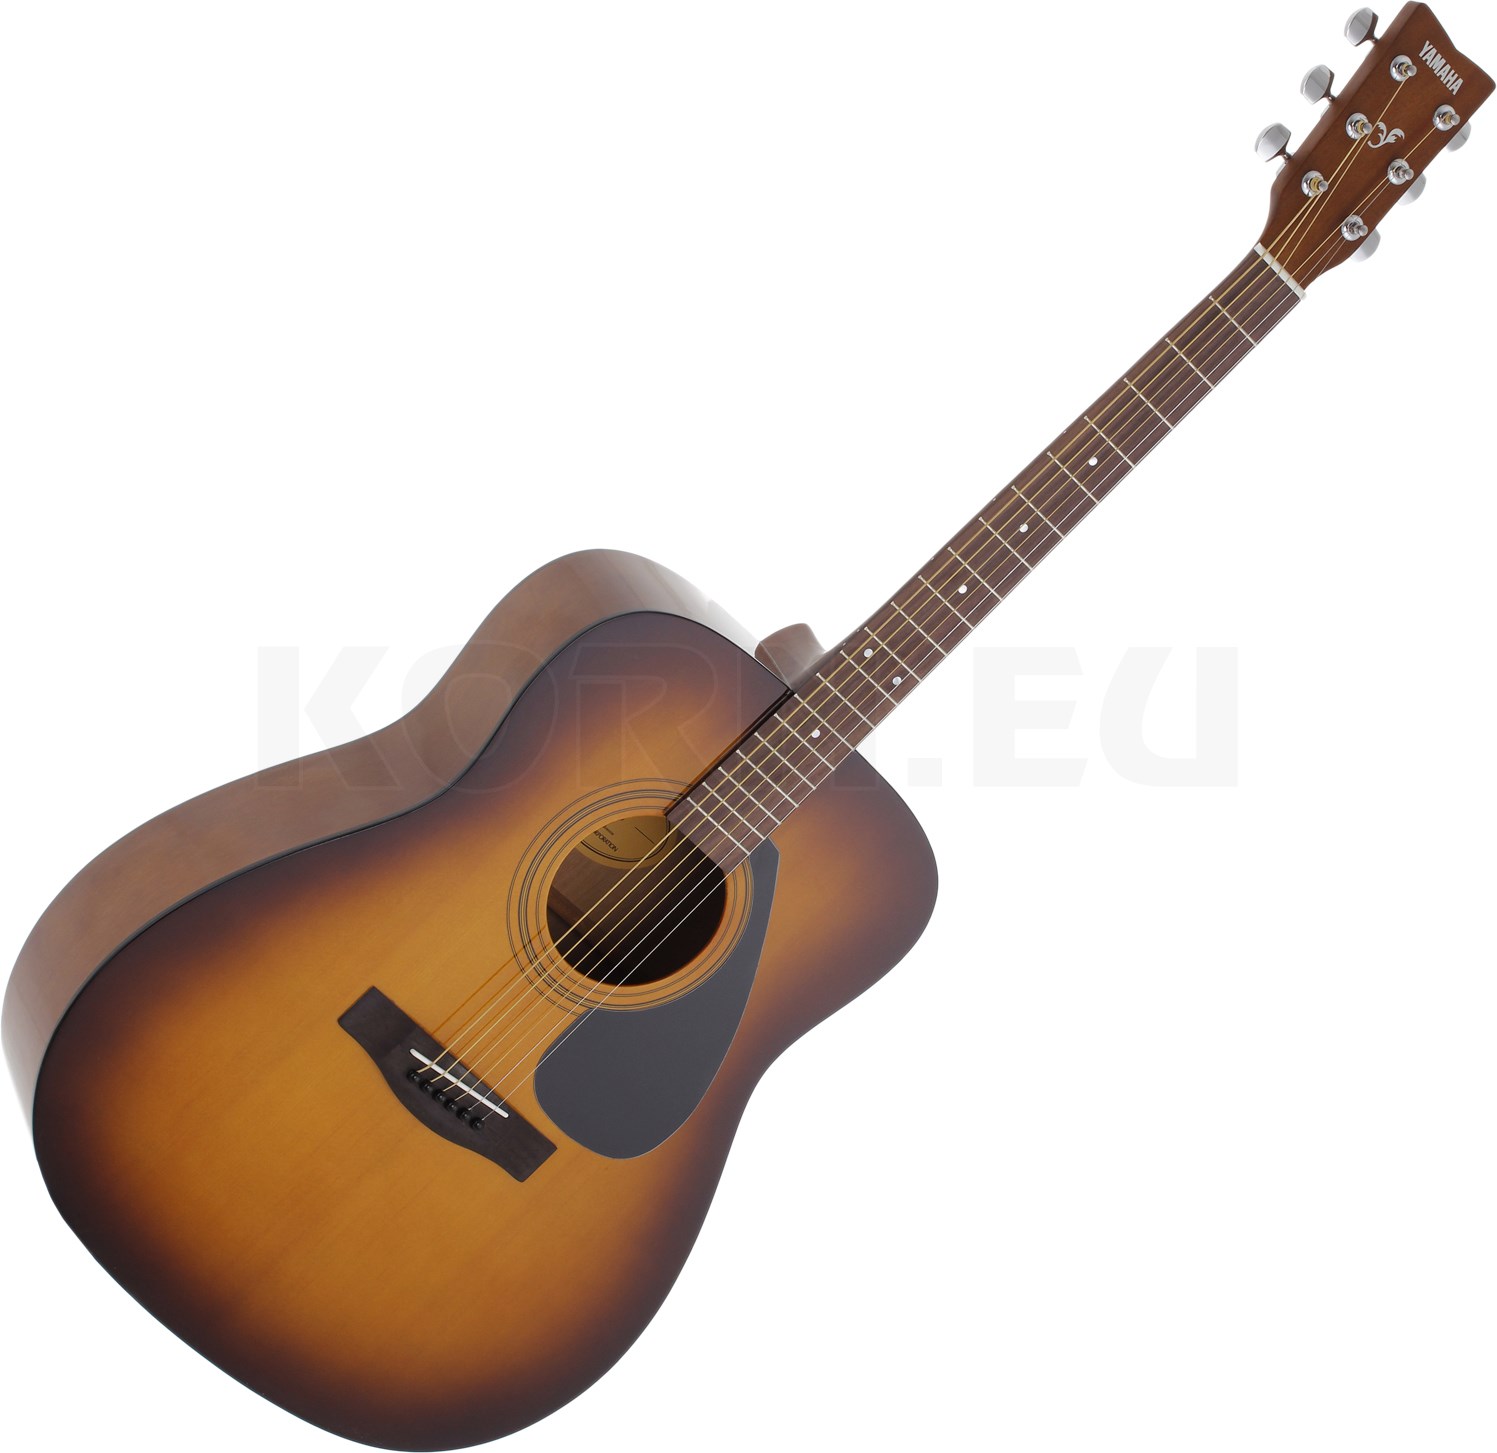 Купить акустические гитары f310. Yamaha f310 Black. Гитара f310 Yamaha. Ямаха ф310 TBS. Акустическая гитара Yamaha f310.